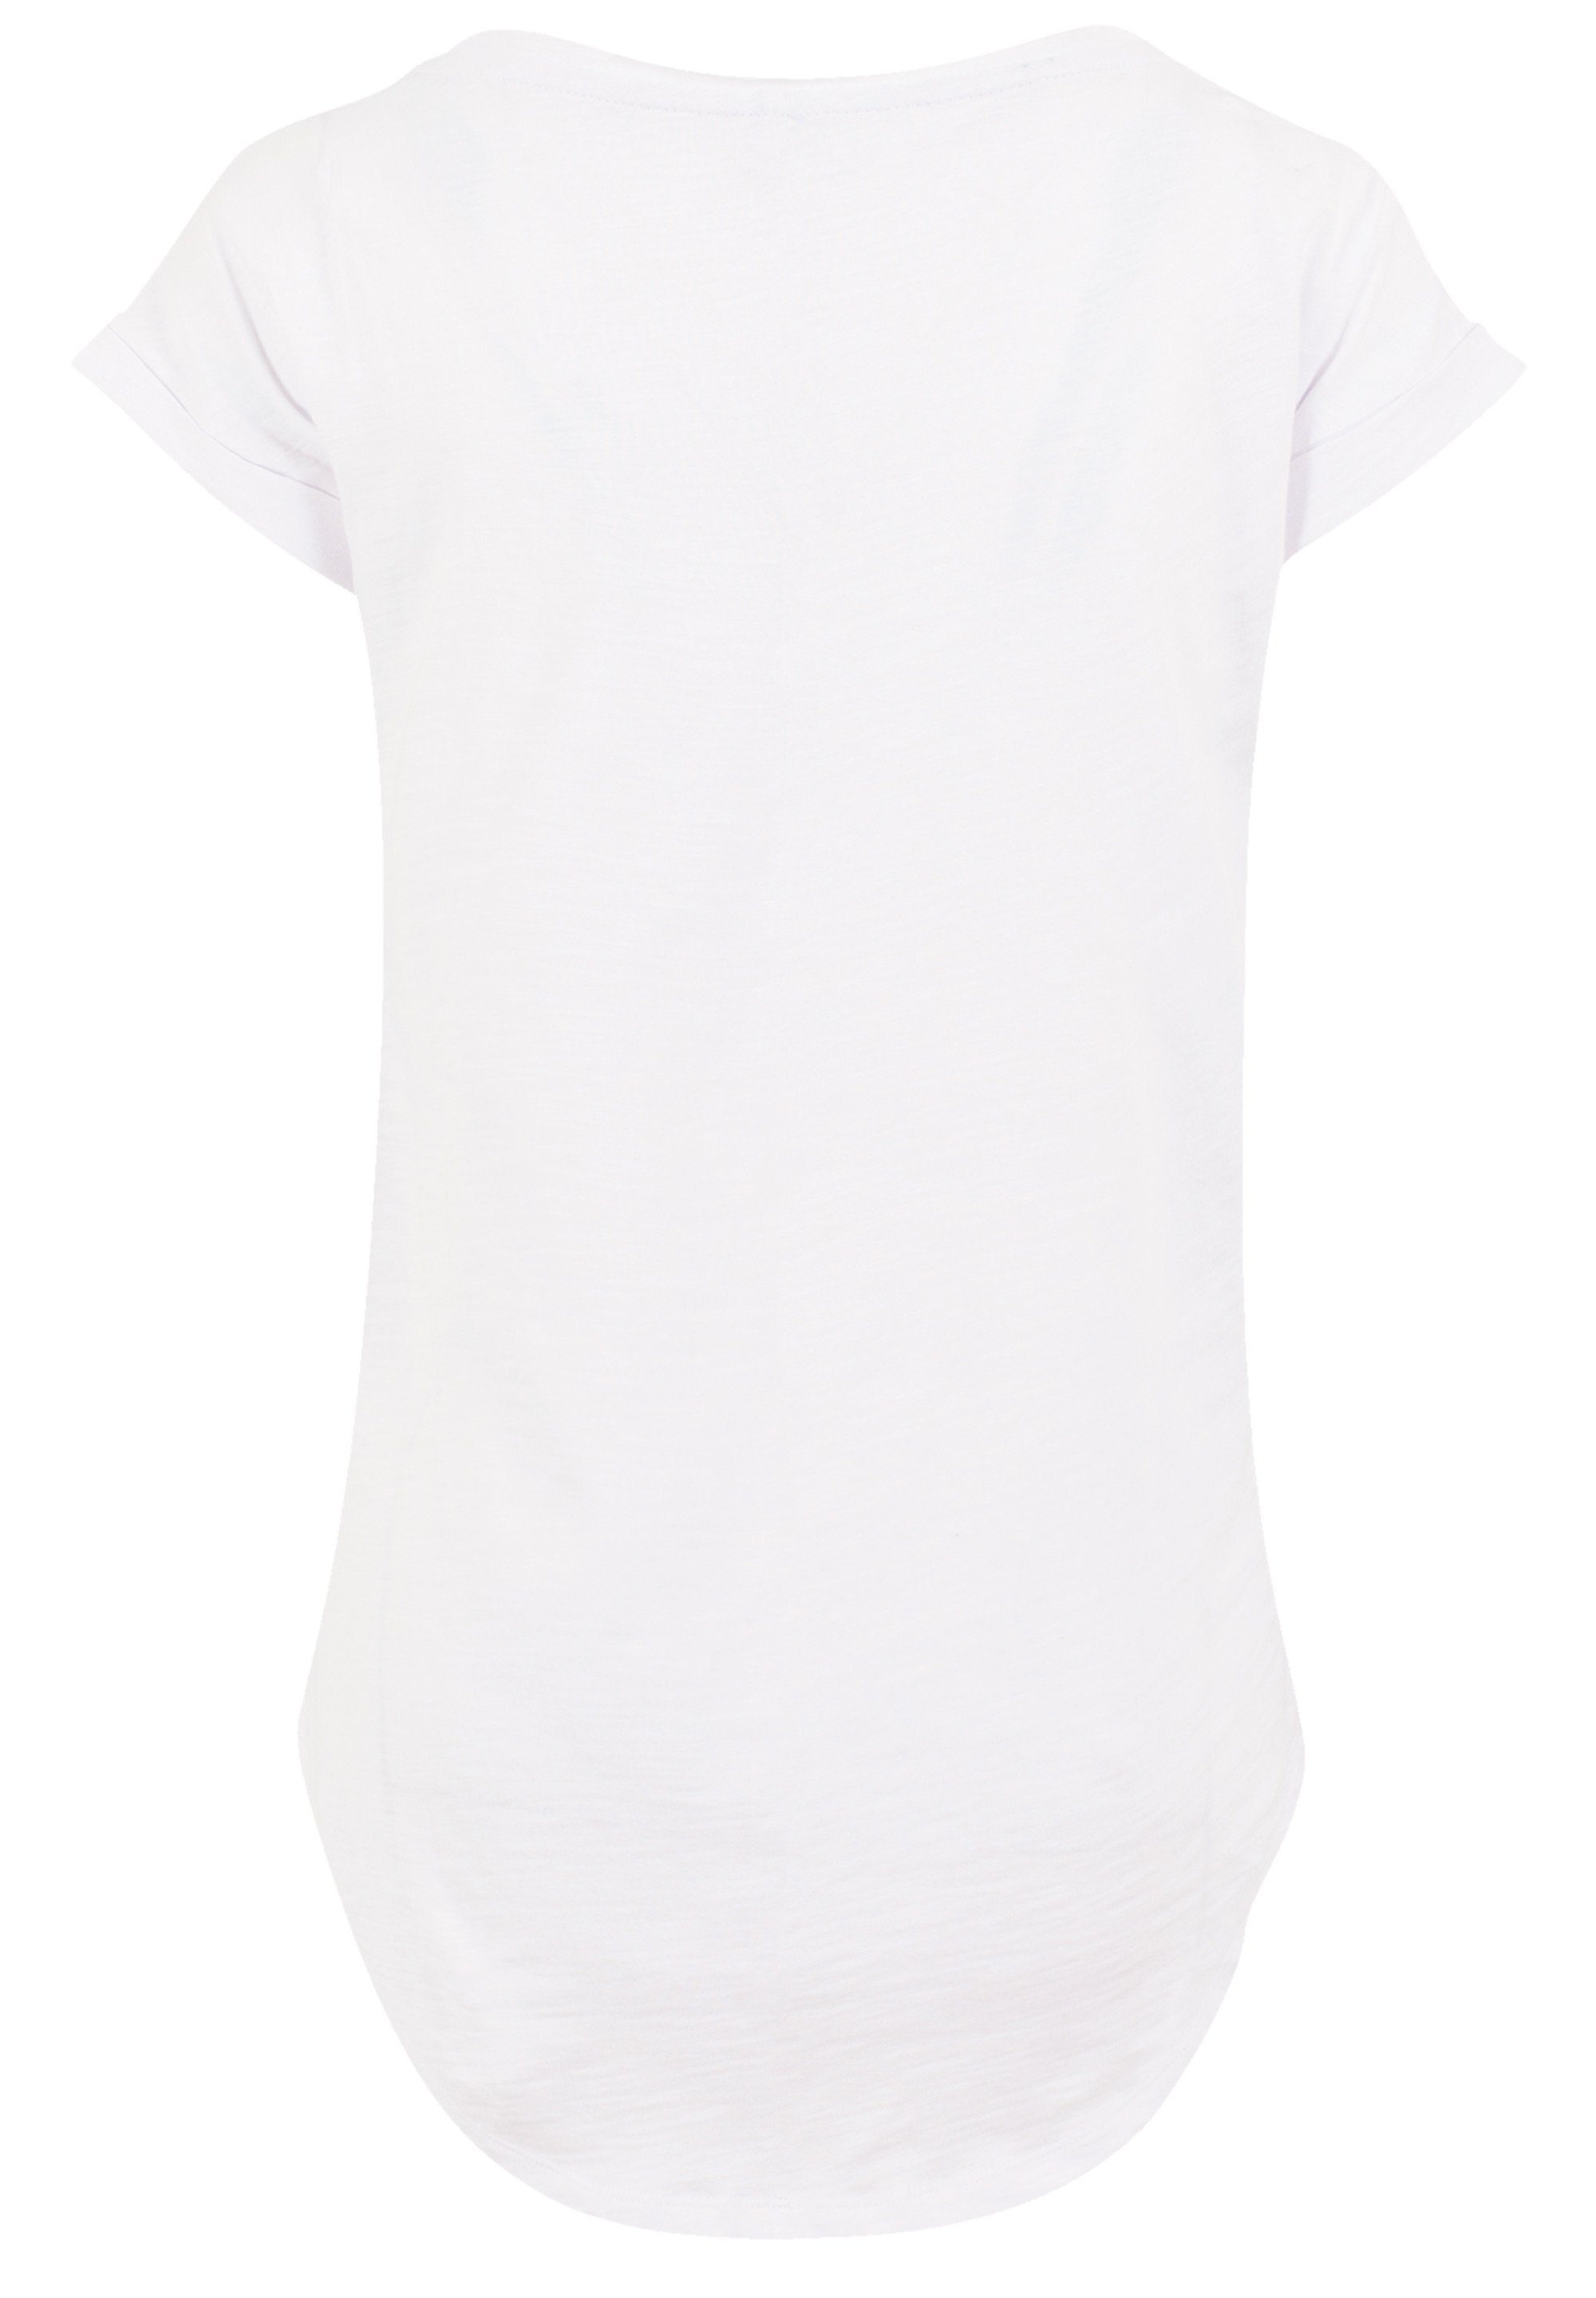 F4NT4STIC T-Shirt PLUS SIZE Baltic Coast Print, Sehr weicher Baumwollstoff  mit hohem Tragekomfort